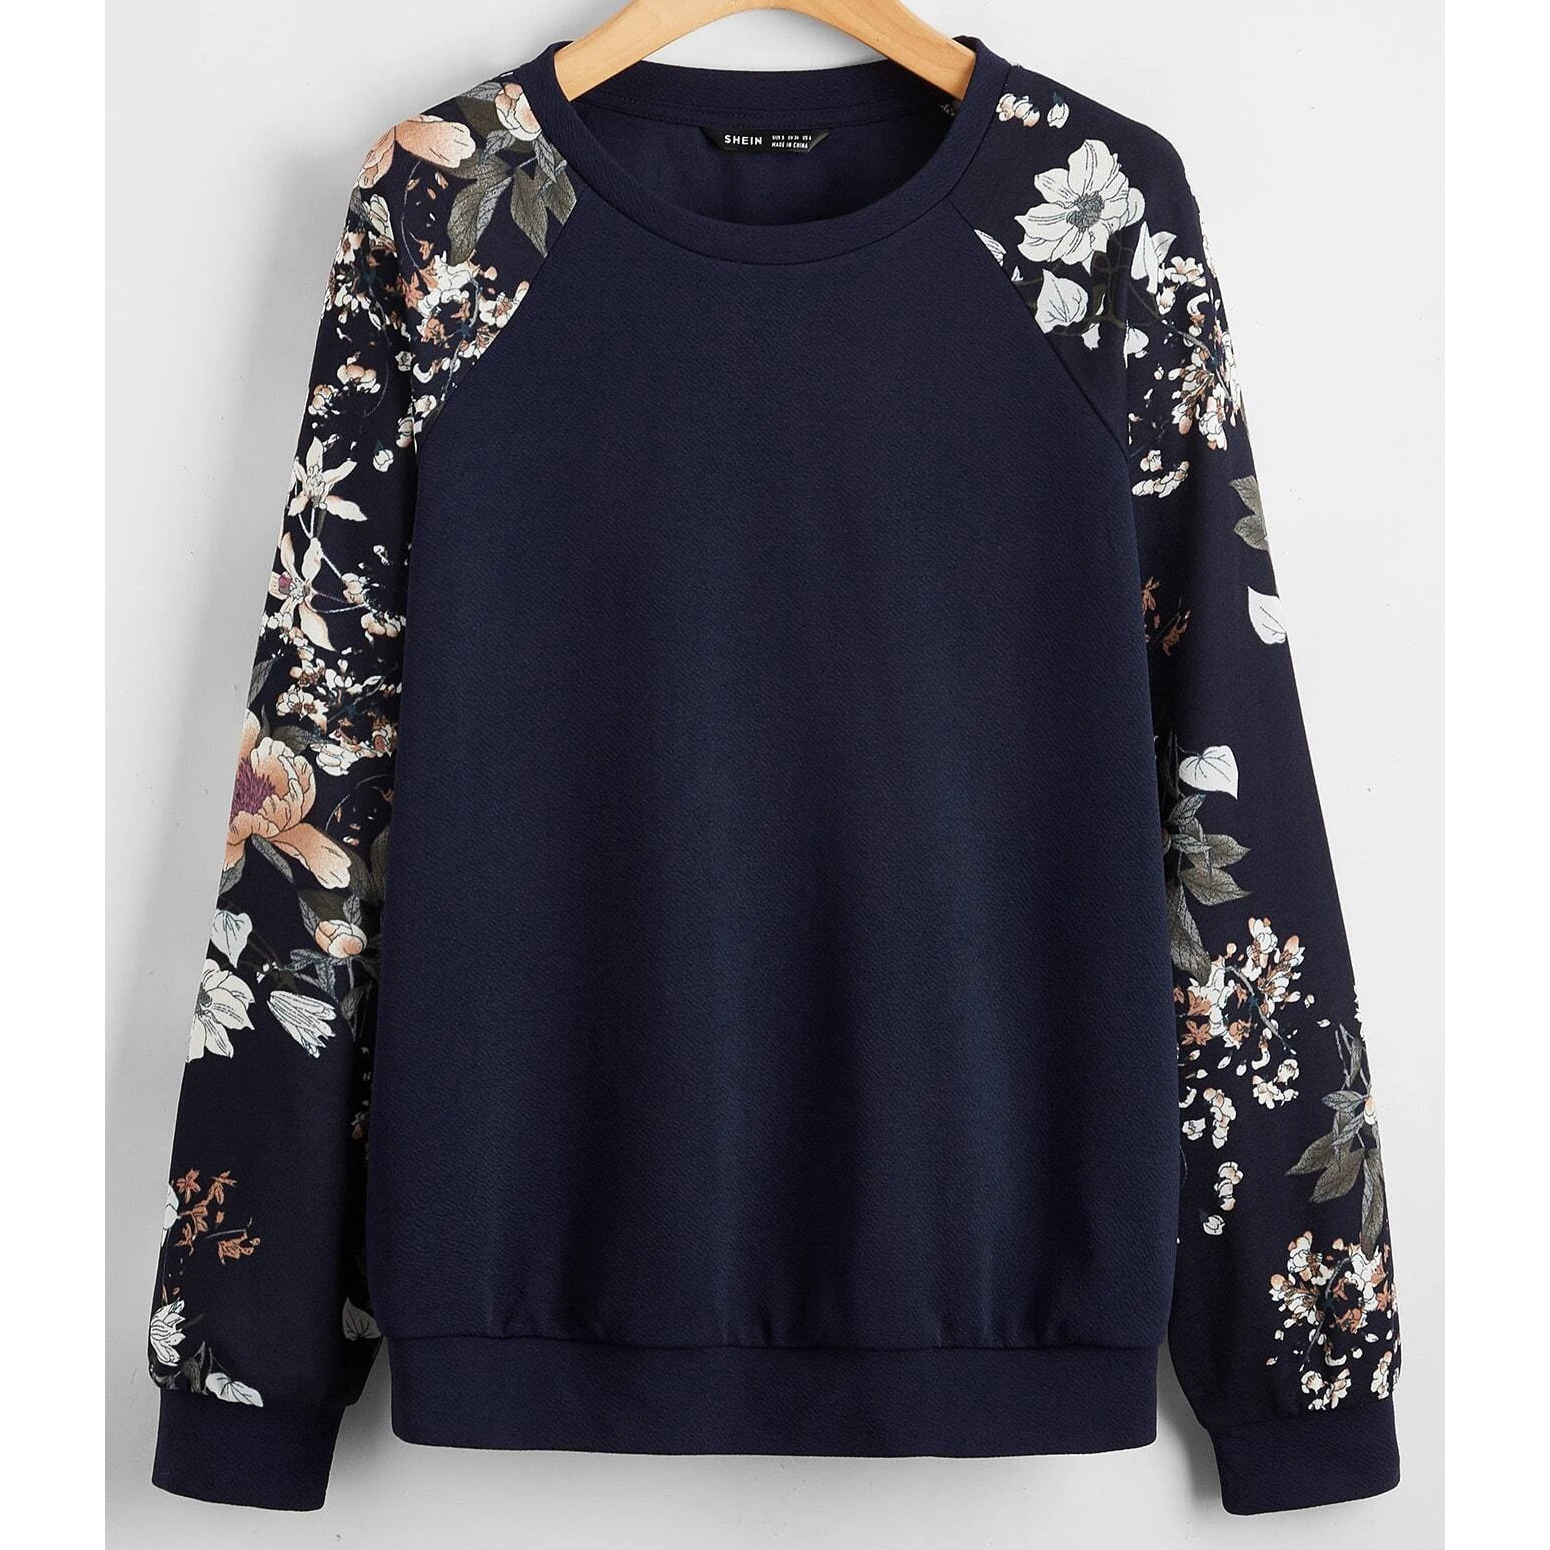 Floral Raglan Sleeve Pullover - Medium(6)